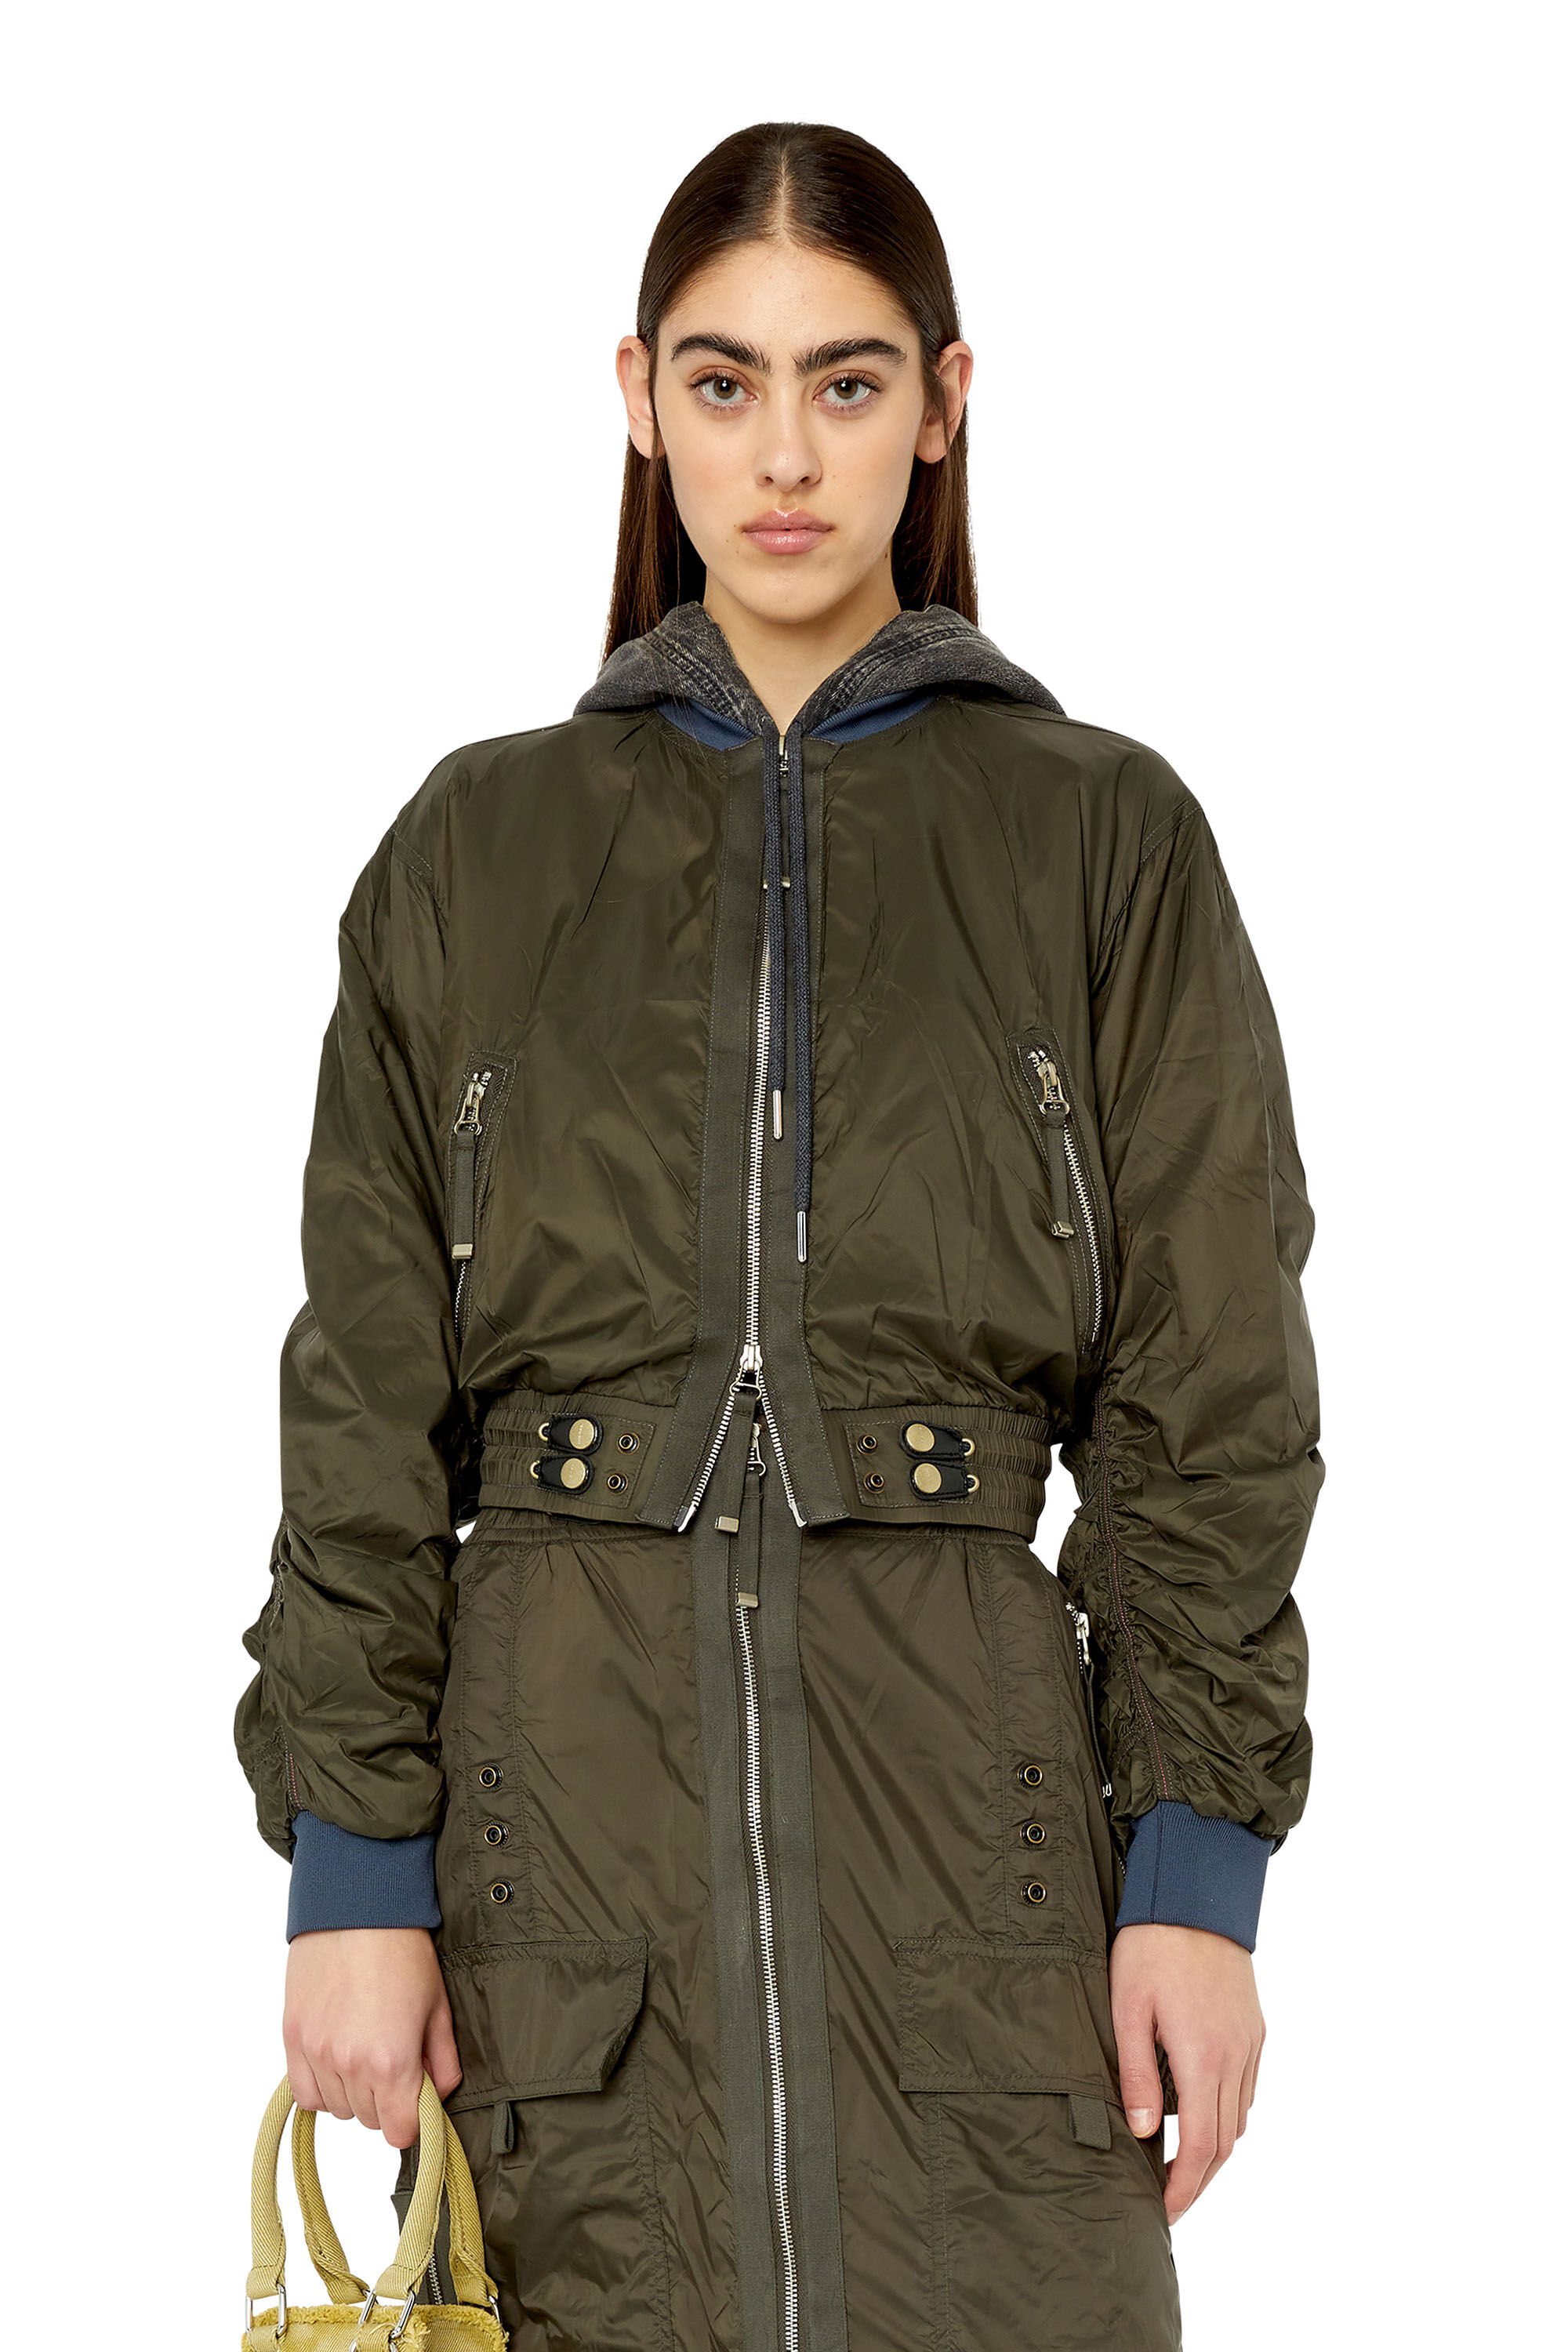 Diesel - G-NOAK, Woman Bomber jacket in light nylon in Green - Image 3